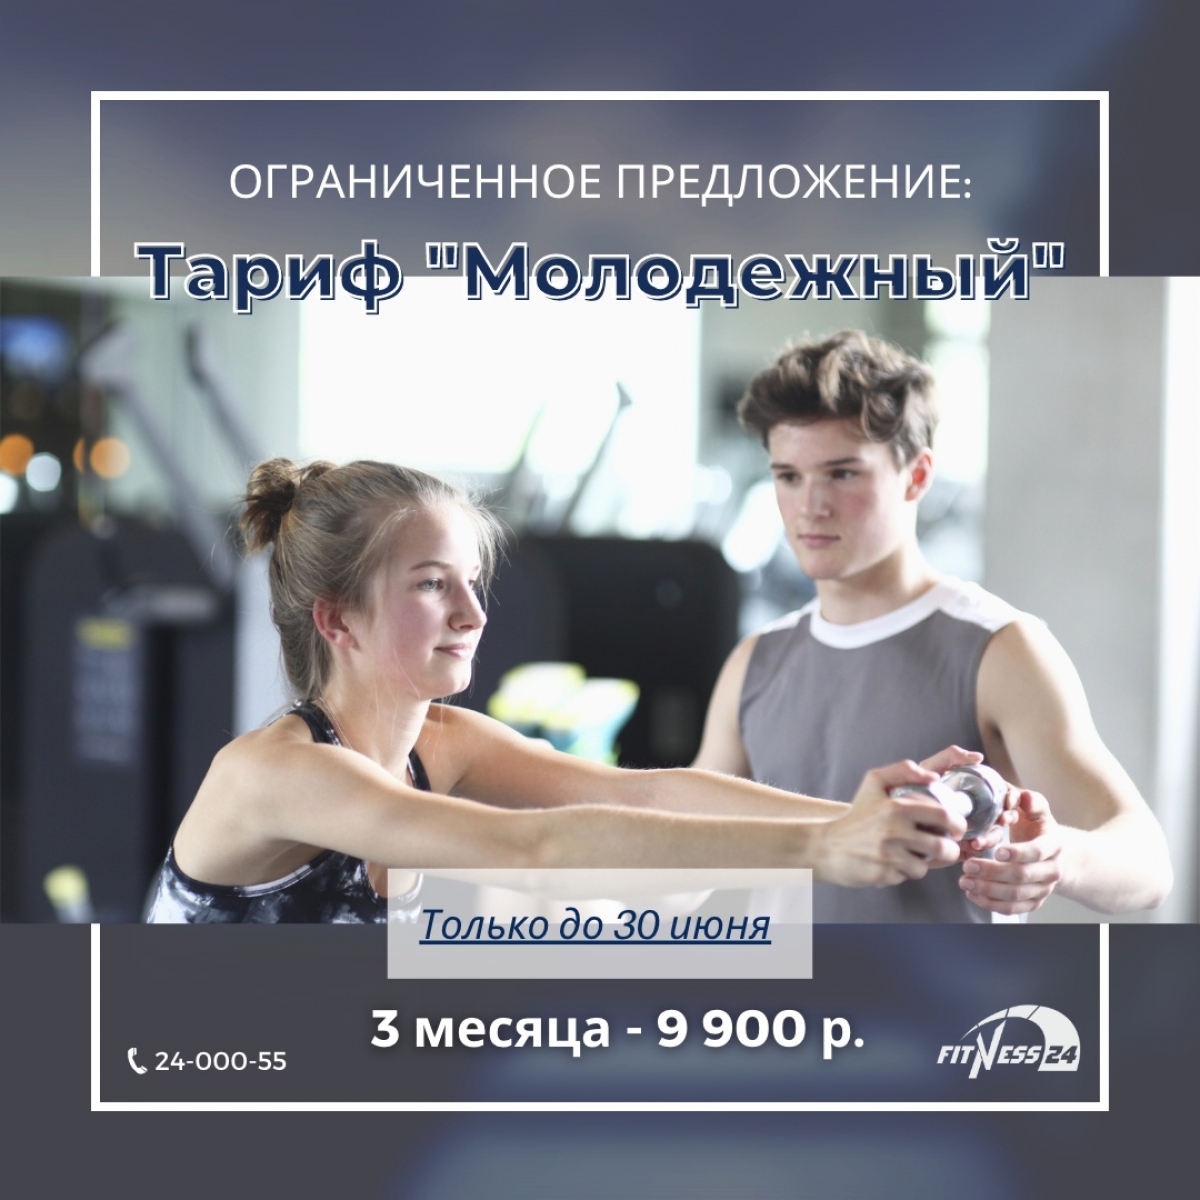 Фитнес для подростков ВСЕГО ЗА 9 900 Р